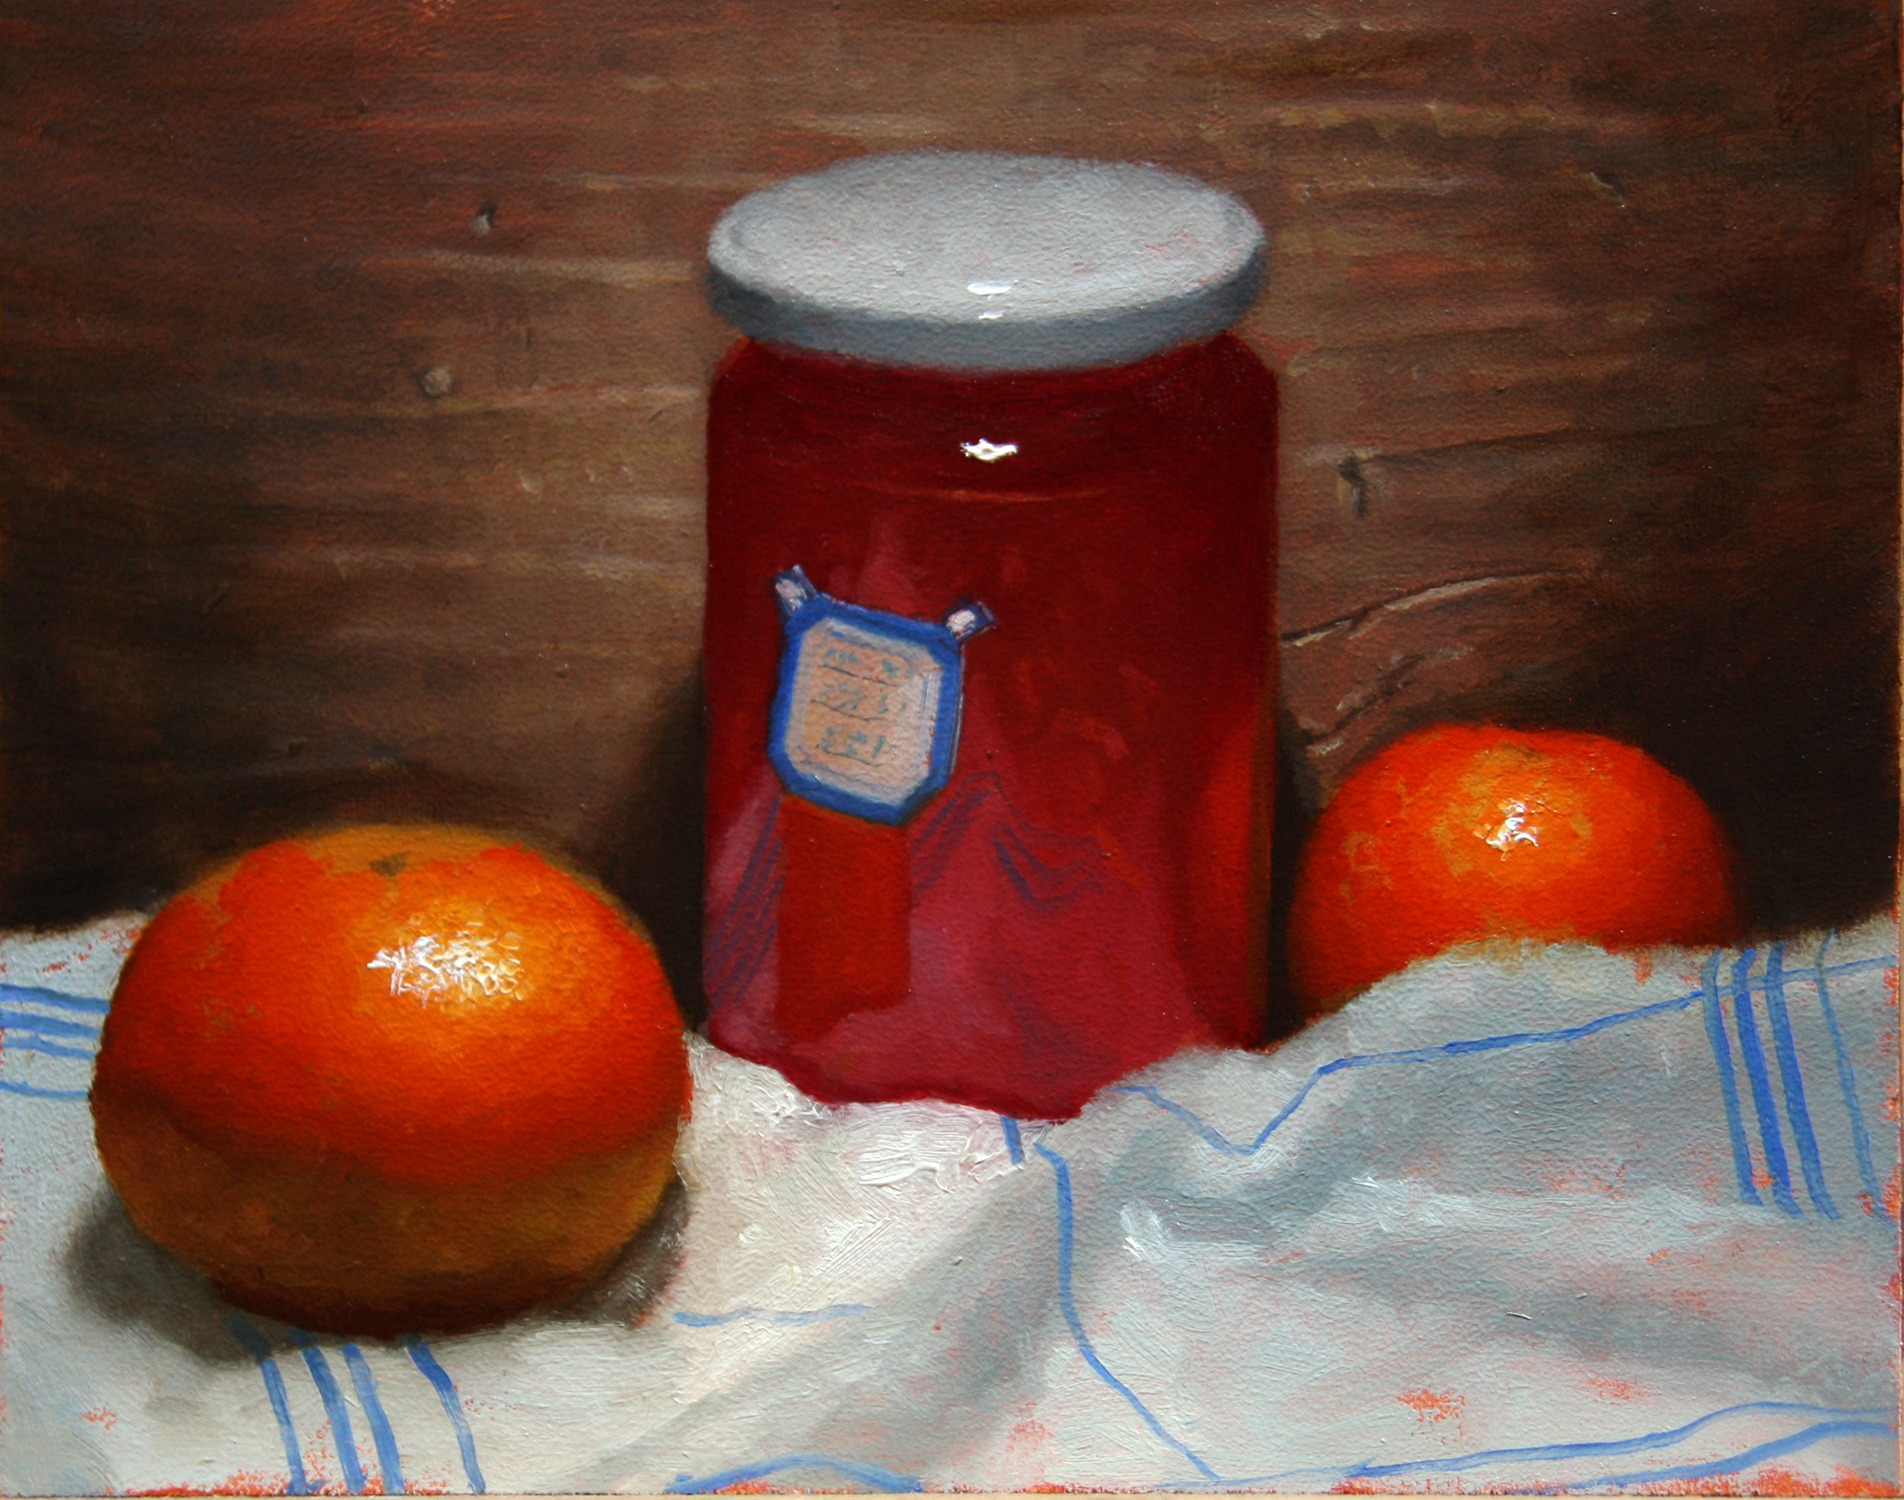 Orange jam